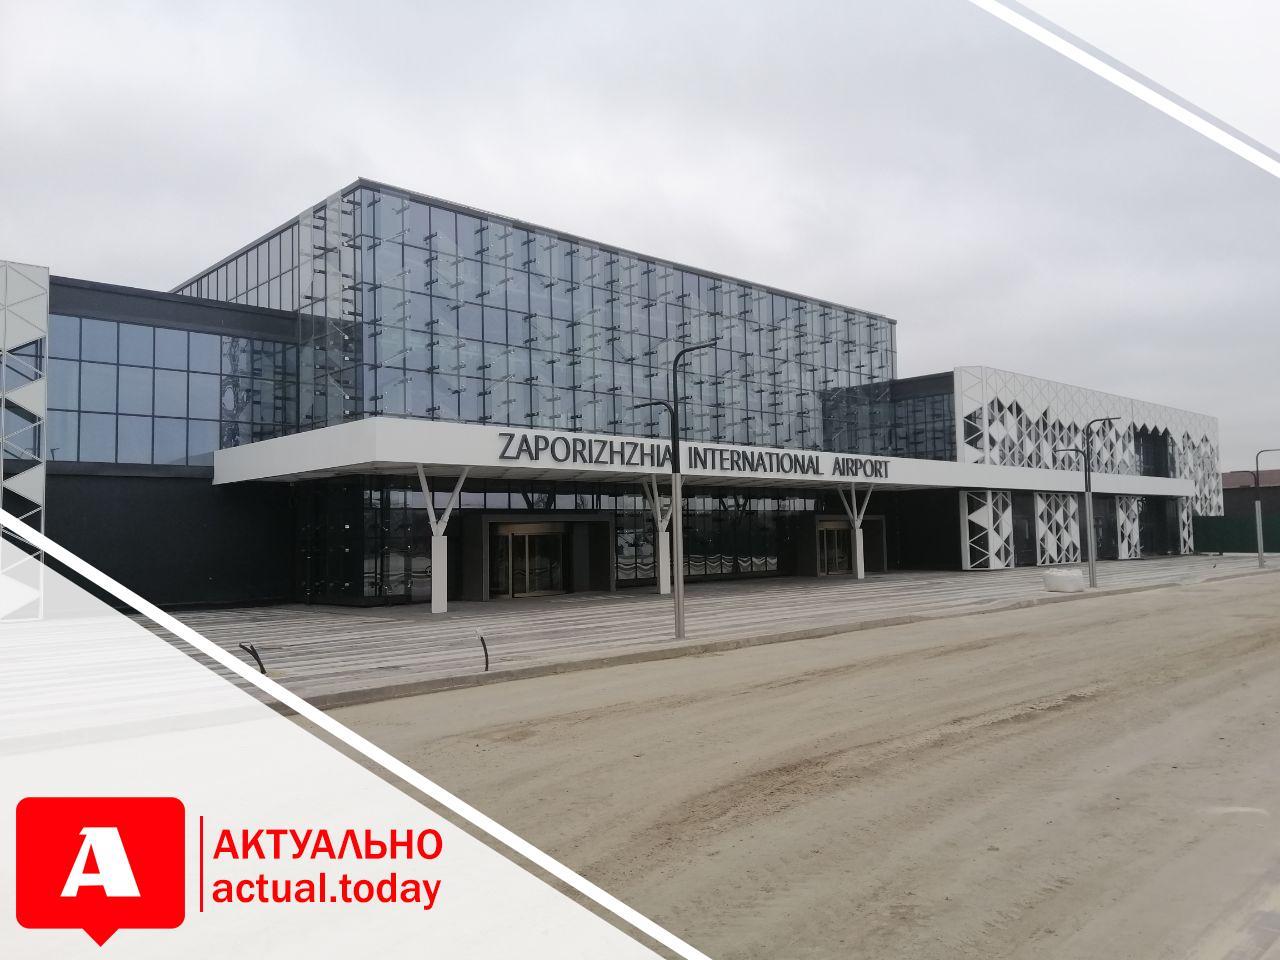 В Запорожье хулиганы повредили имущество в новом терминале аэропорта